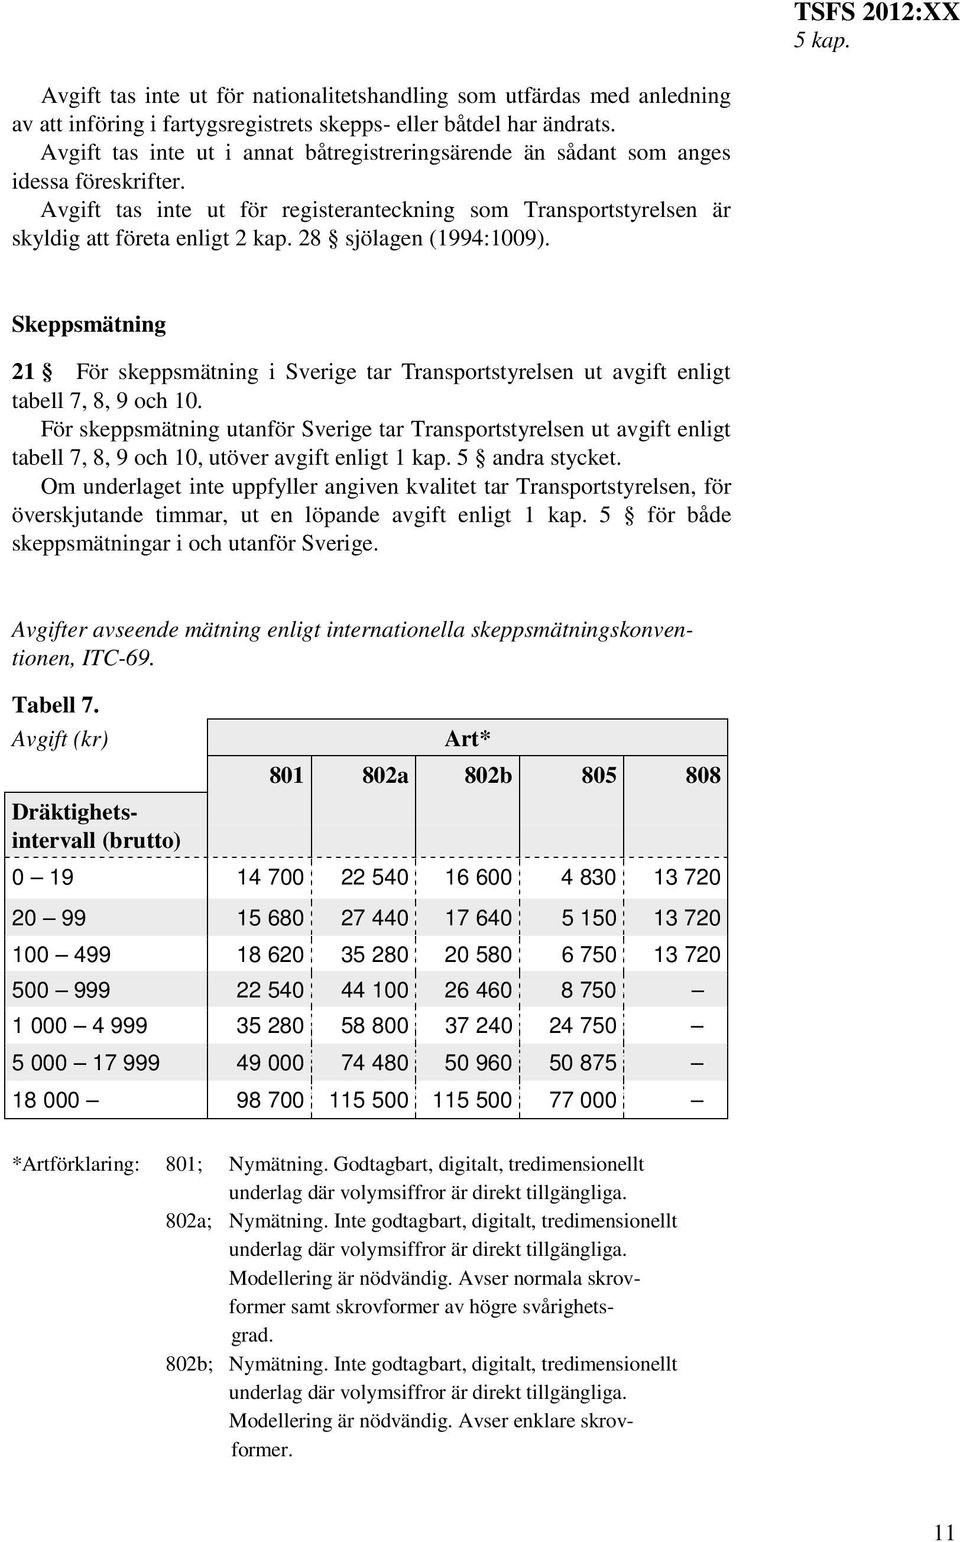 28 sjölagen (1994:1009). Skeppsmätning 21 För skeppsmätning i Sverige tar Transportstyrelsen ut avgift enligt tabell 7, 8, 9 och 10.